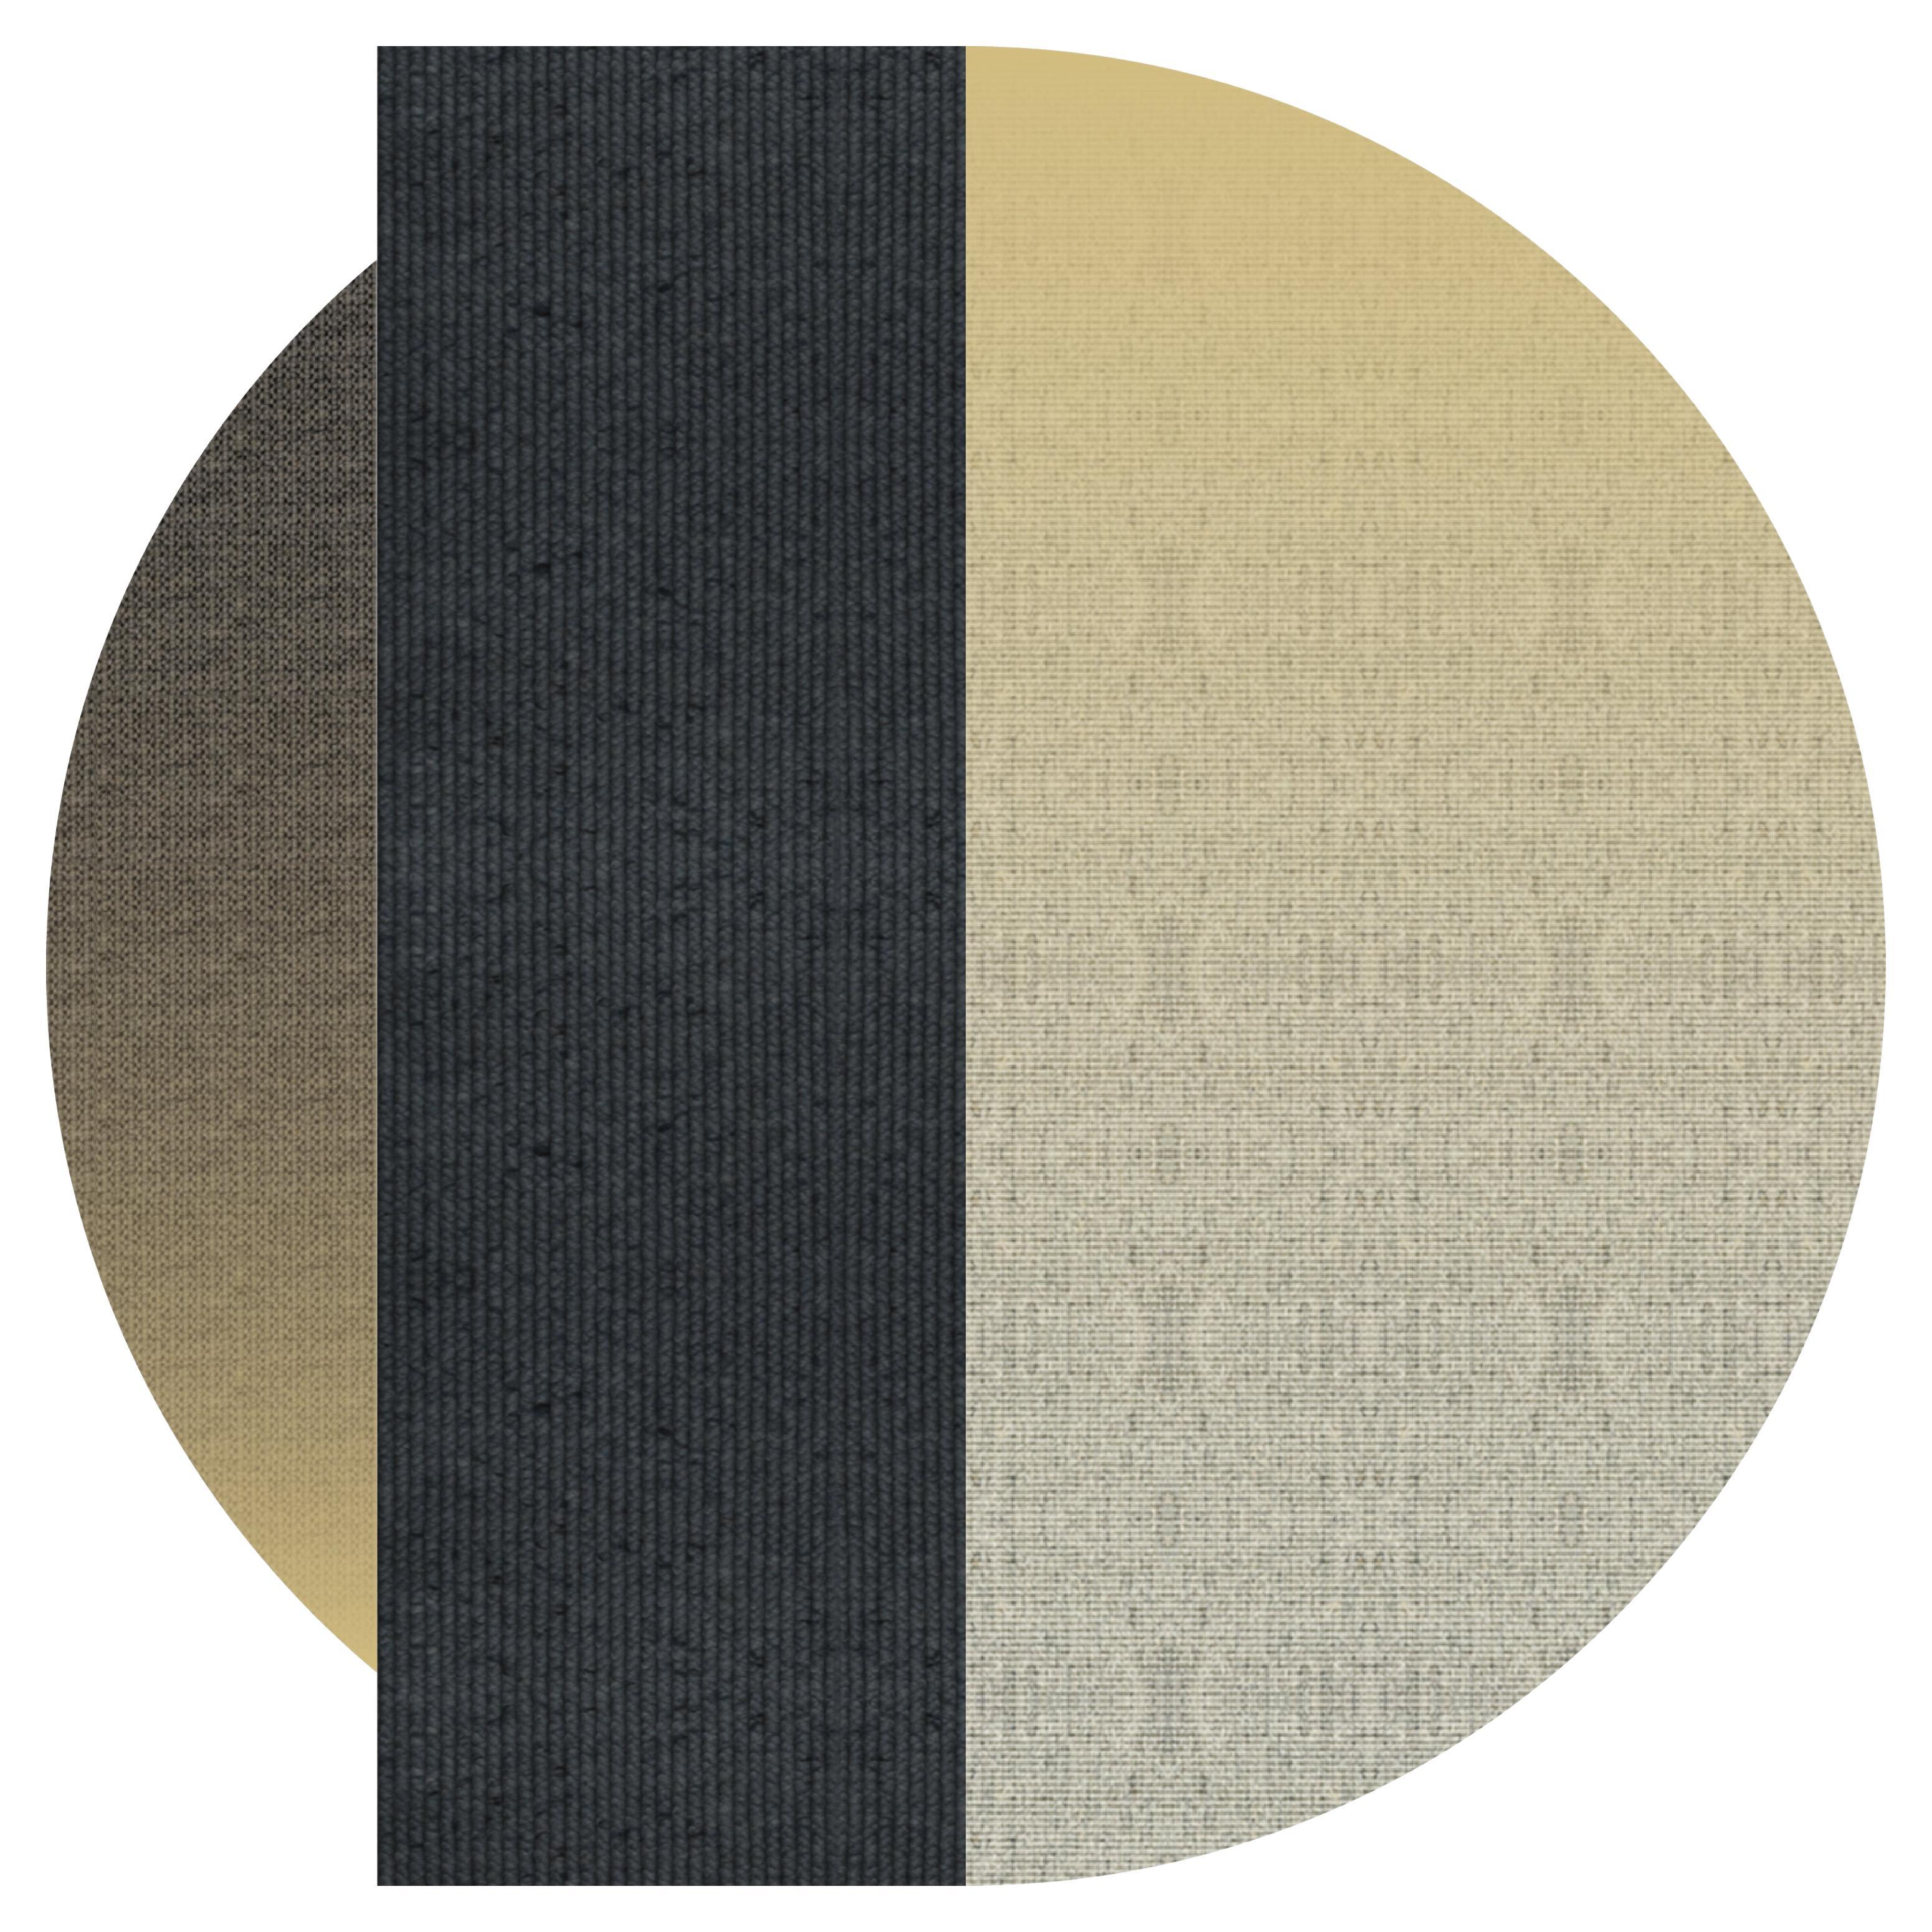 Tapis 'Flux' en Abaca, Couleur 'Pampas', Ø 200cm par Claire Vos pour Musett Design